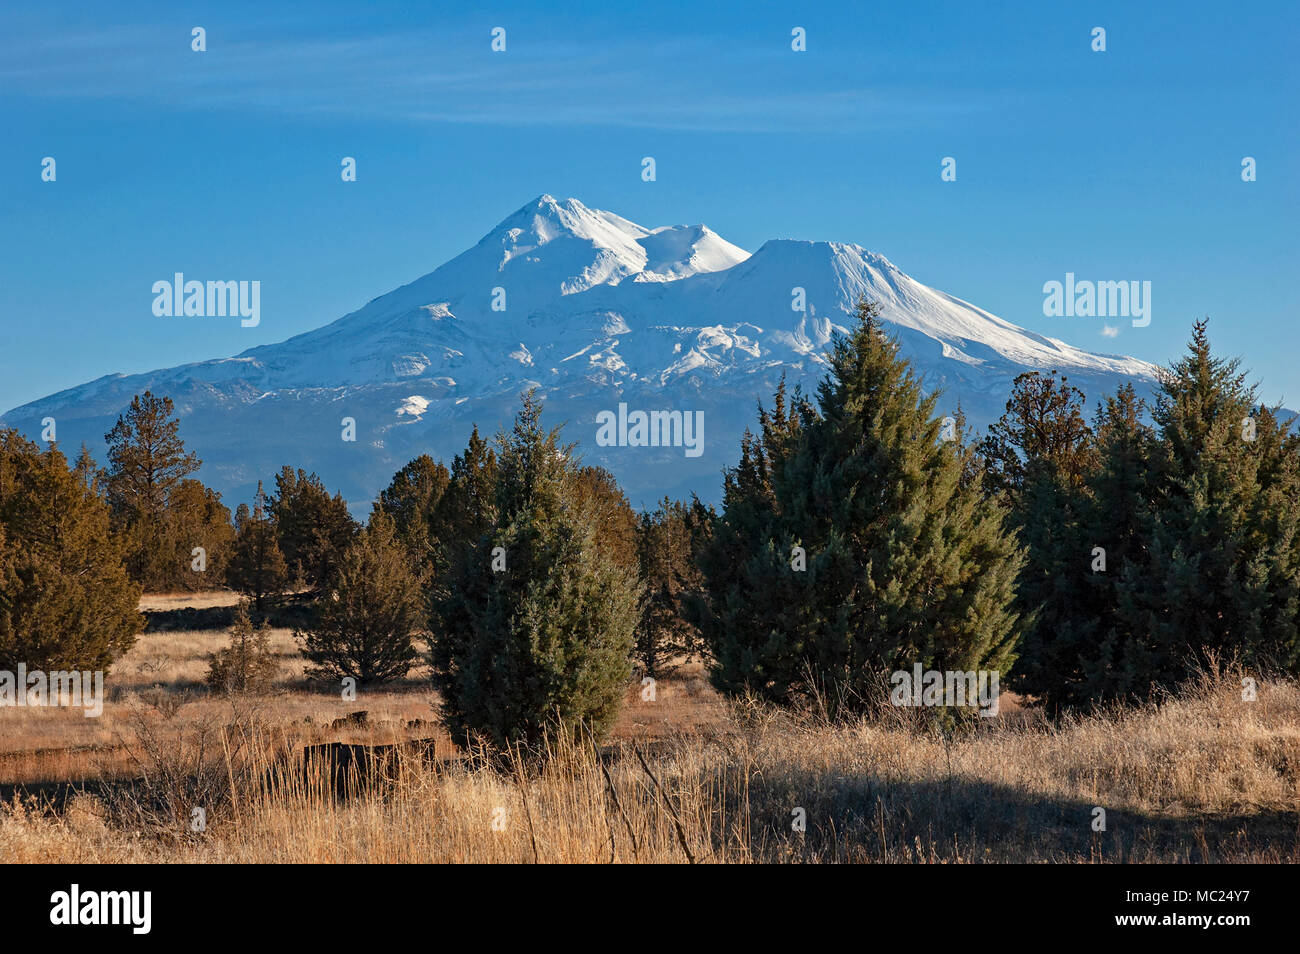 Le mont Shasta avec une forêt de genévrier au premier plan, près de Montague, Californie Banque D'Images